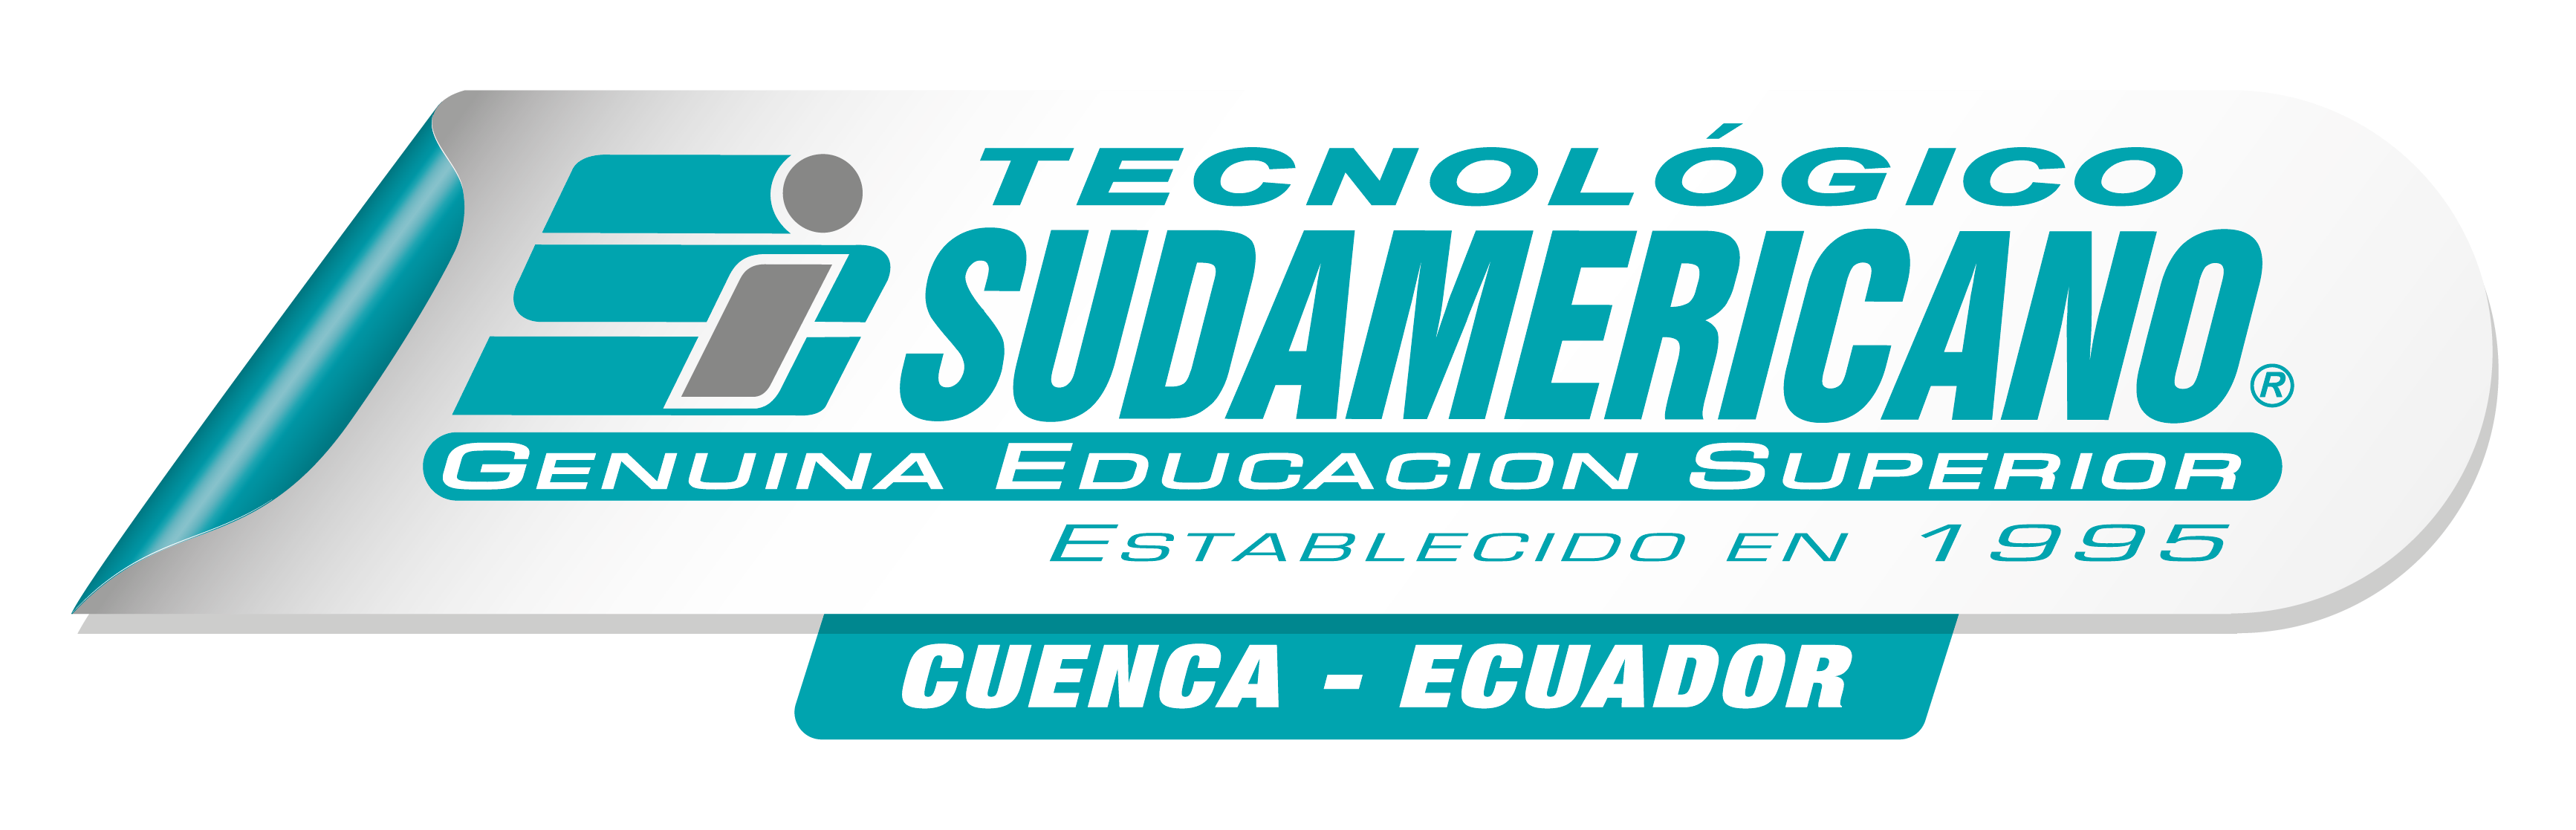 Instituto Tecnológico Sudamericano